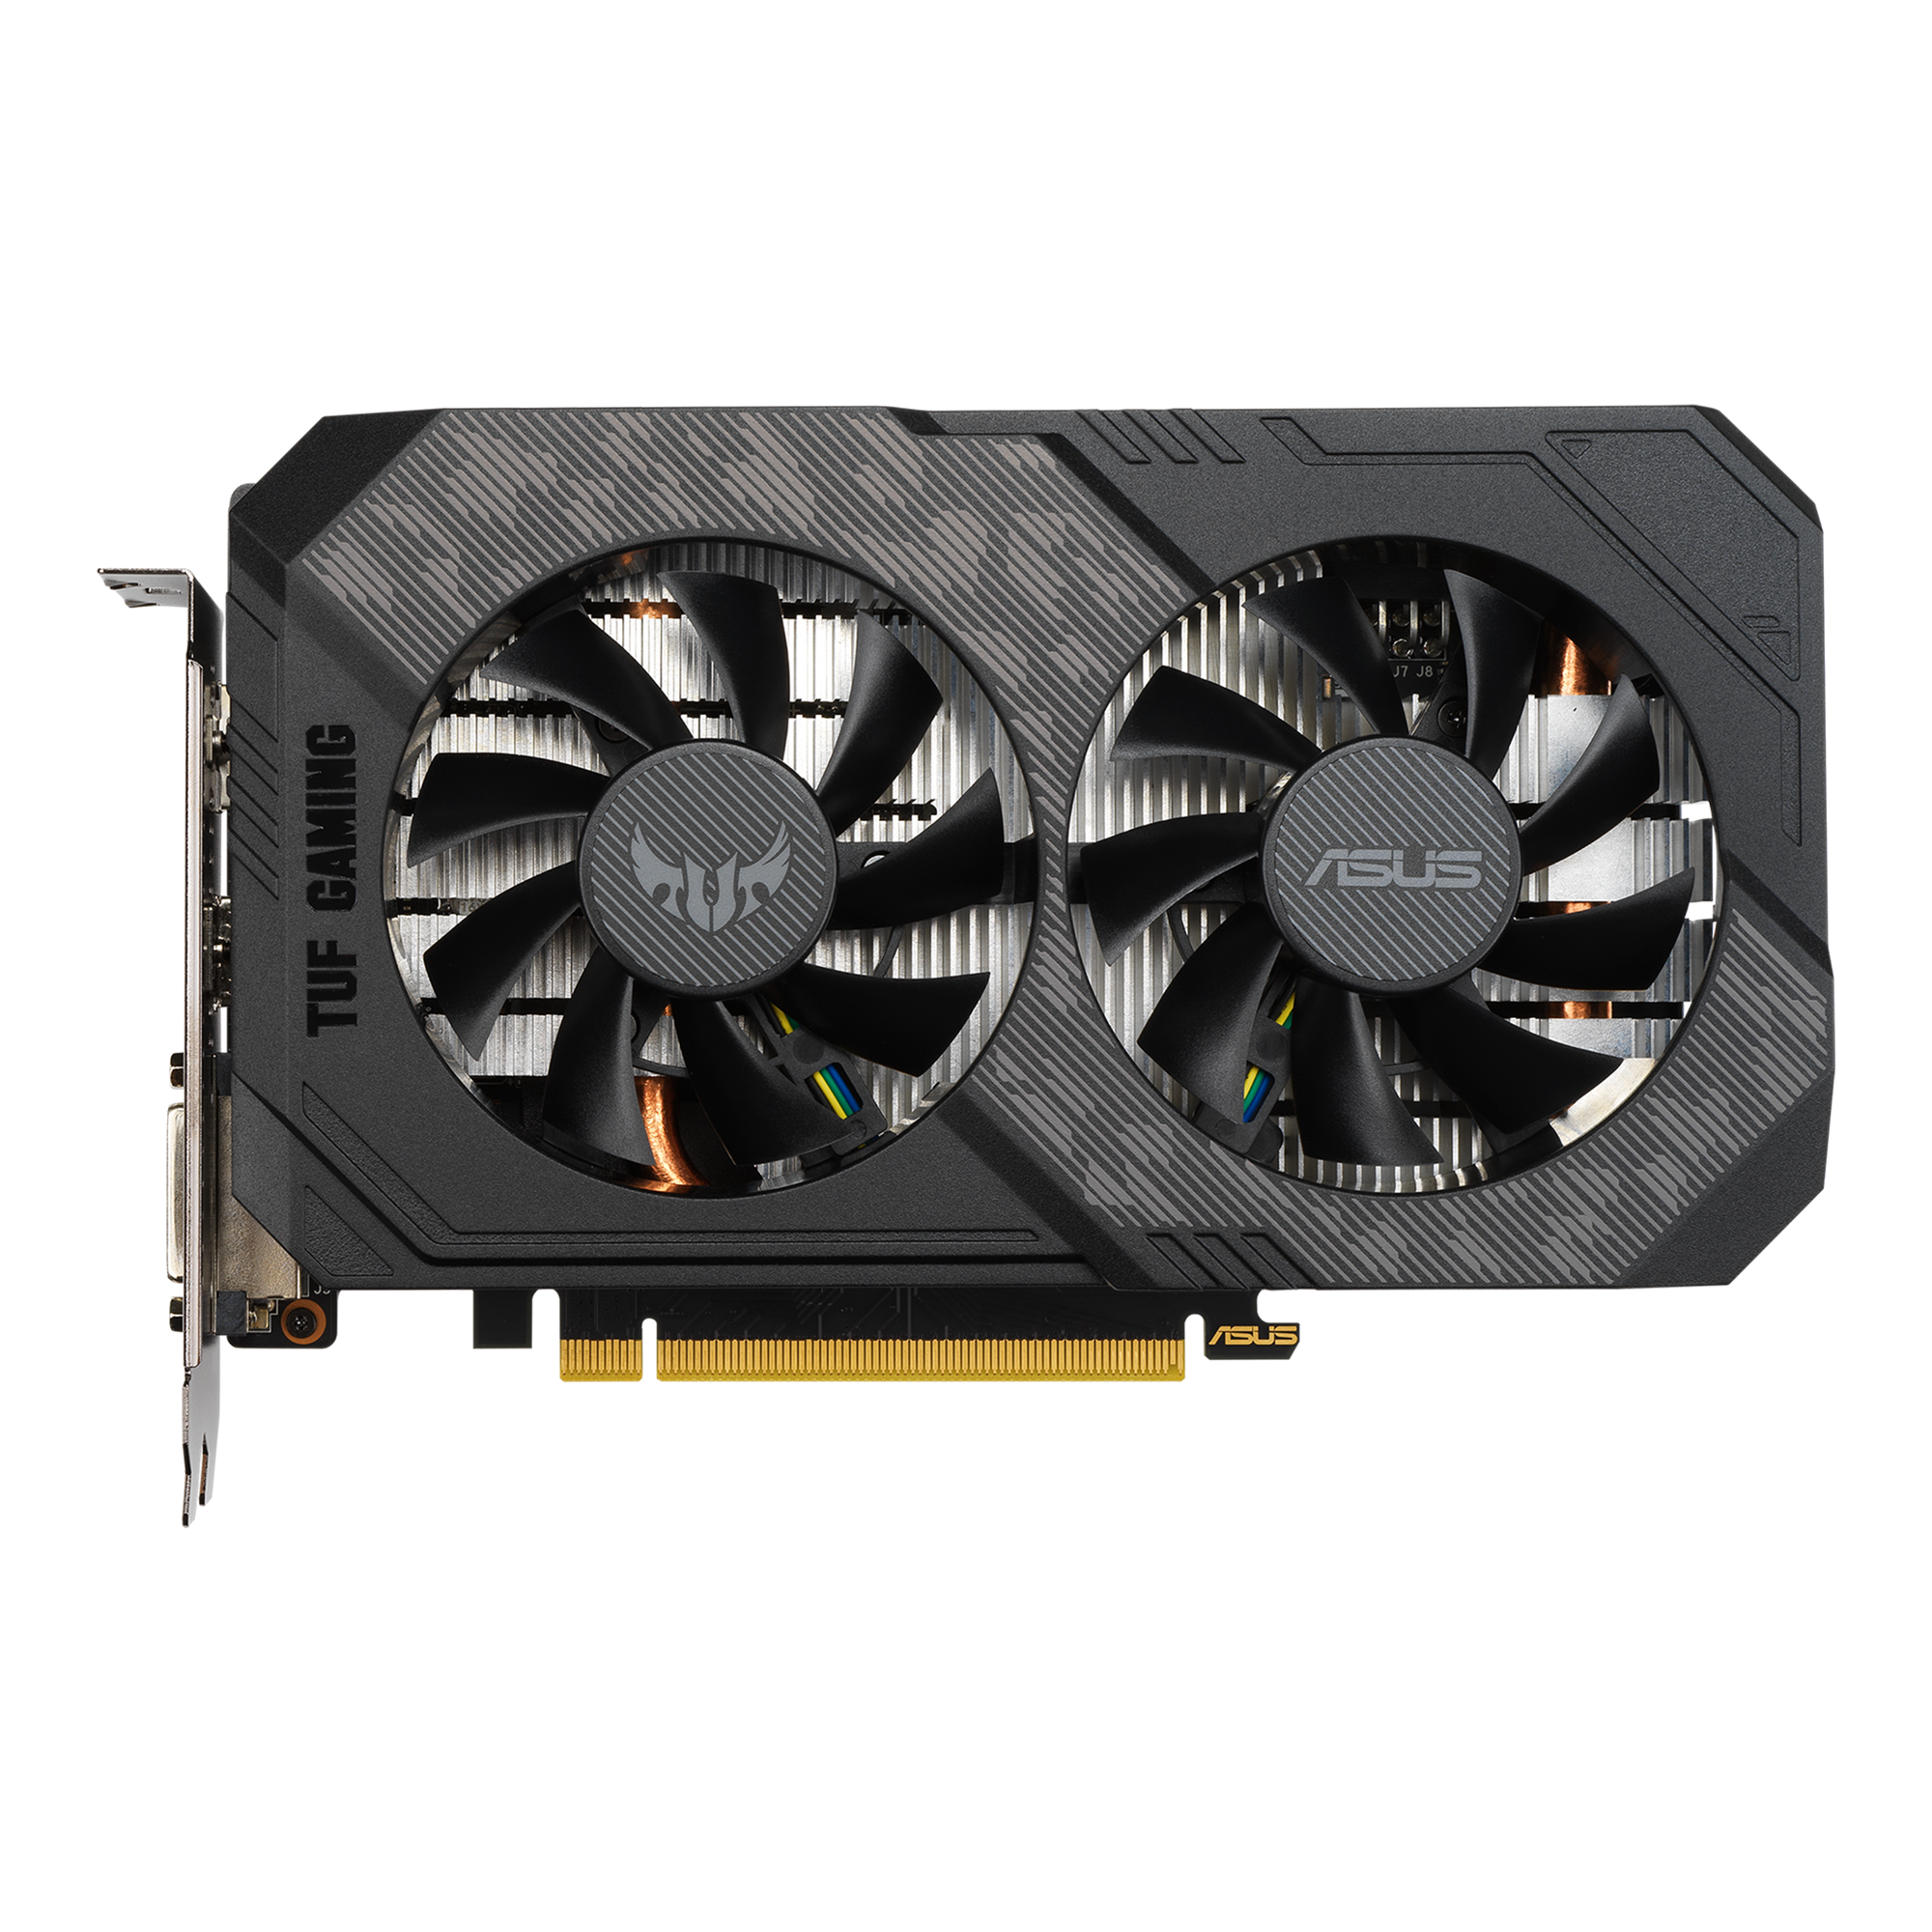 倉庫 ラッキー39ストアASUS NVIDIA GeForce GTX 1660 SUPER 搭載 デュアルファンモデル 6G TUF-GTX1660S -O6G-G